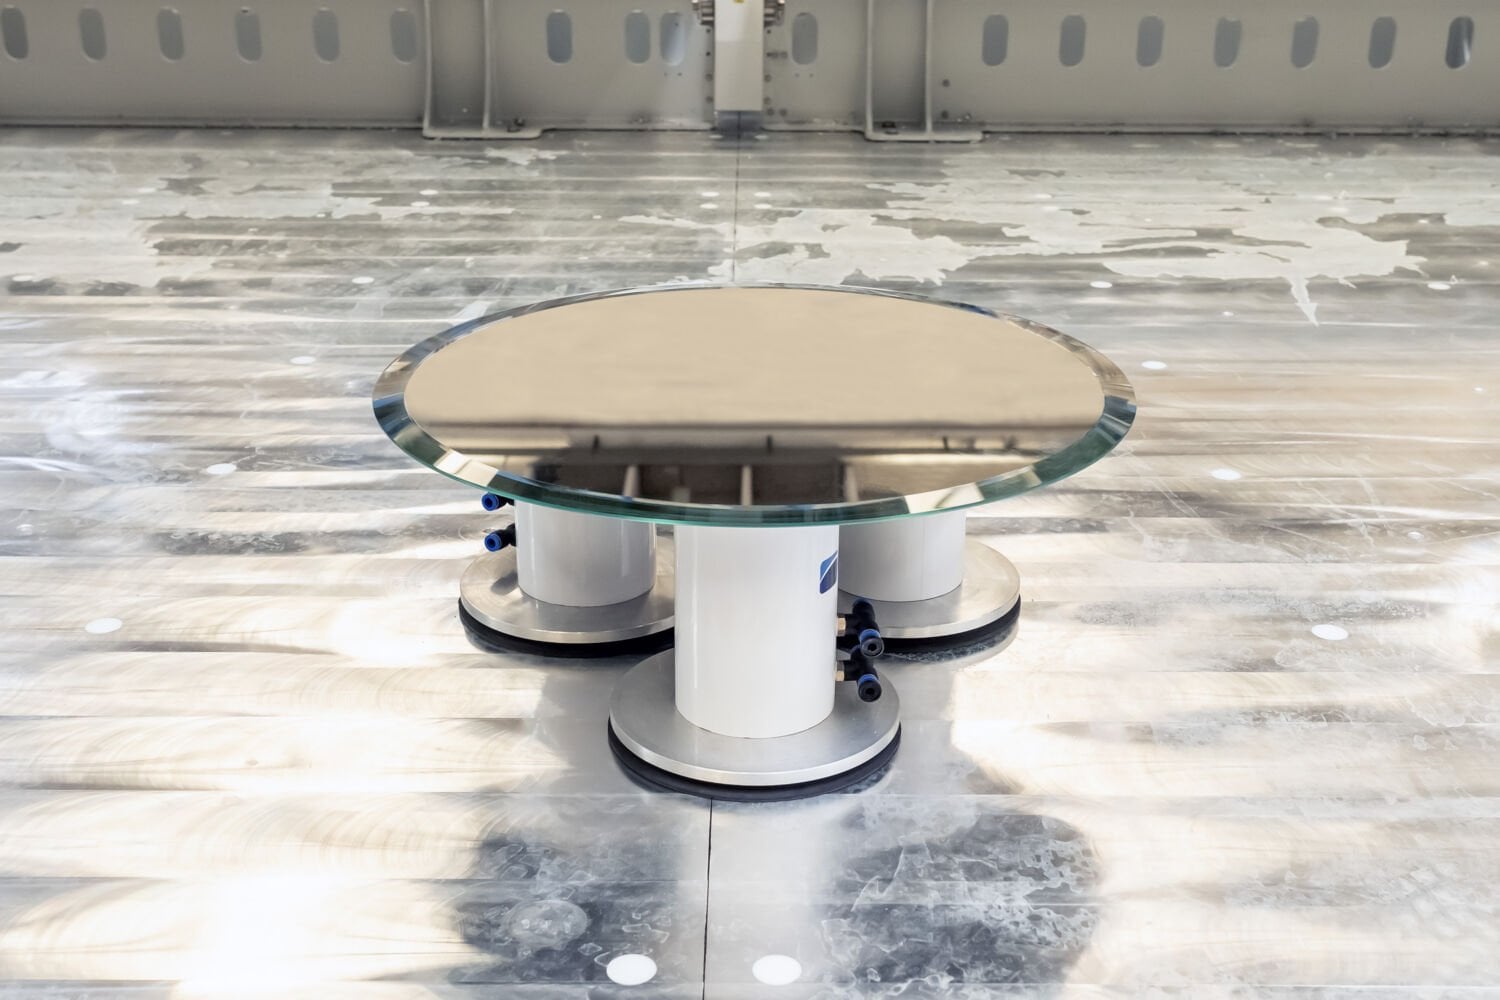 Entdecken Sie electa: das horizontale CMS-Bearbeitungszentrum, das die Raumeffizienz neu definiert! 